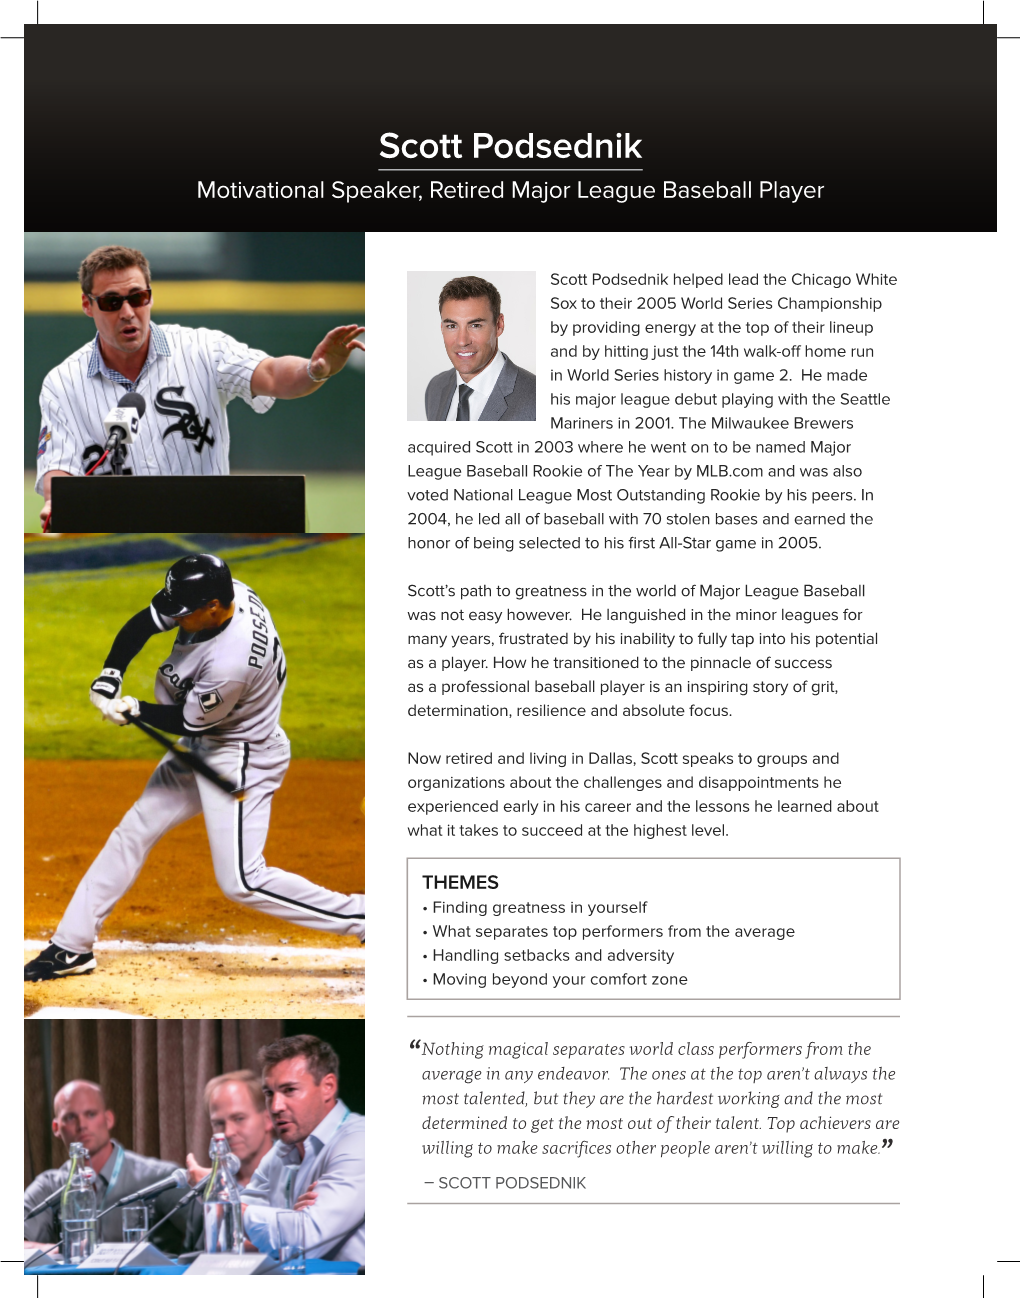 Scott Podsednik Motivational Speaker, Retired Major League Baseball Player